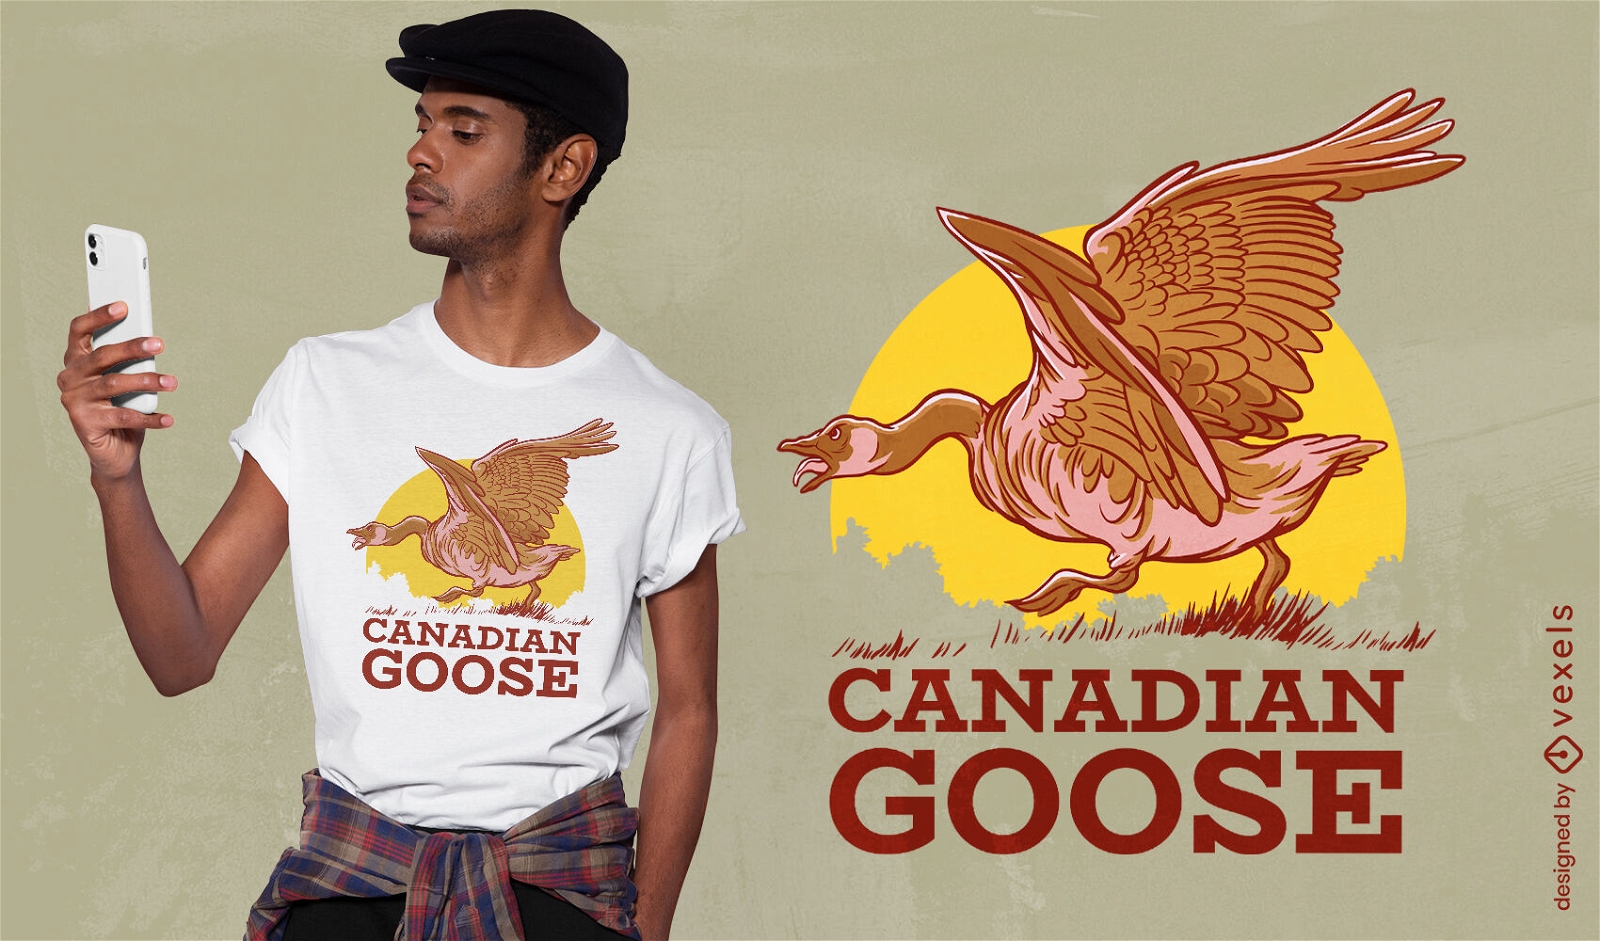 Canadian goose animal t-shirt design